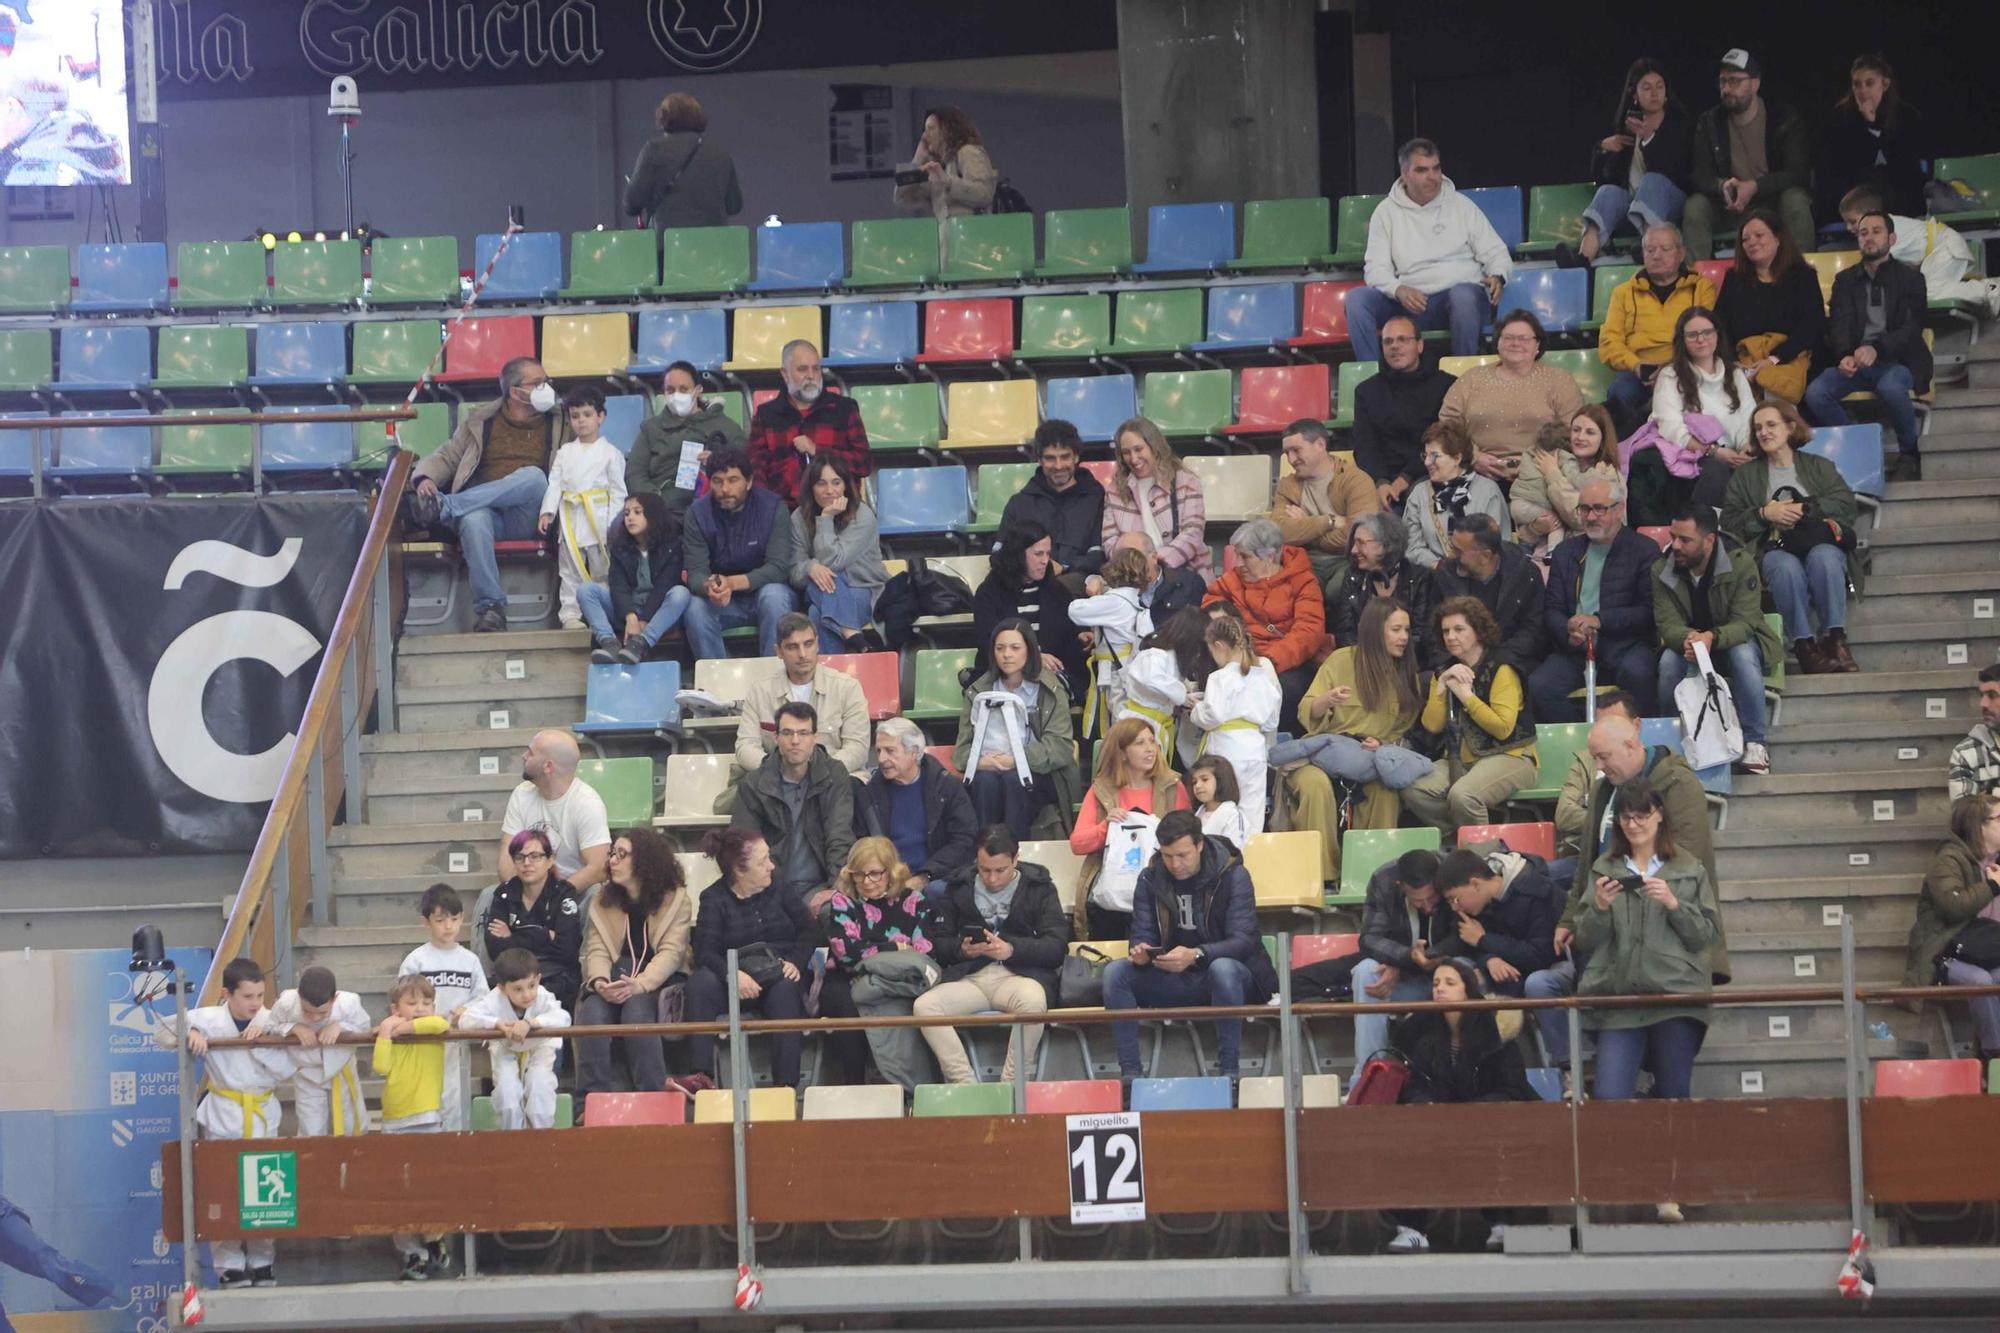 Tres mil judokas llenan el Coliseum por el Miguelito